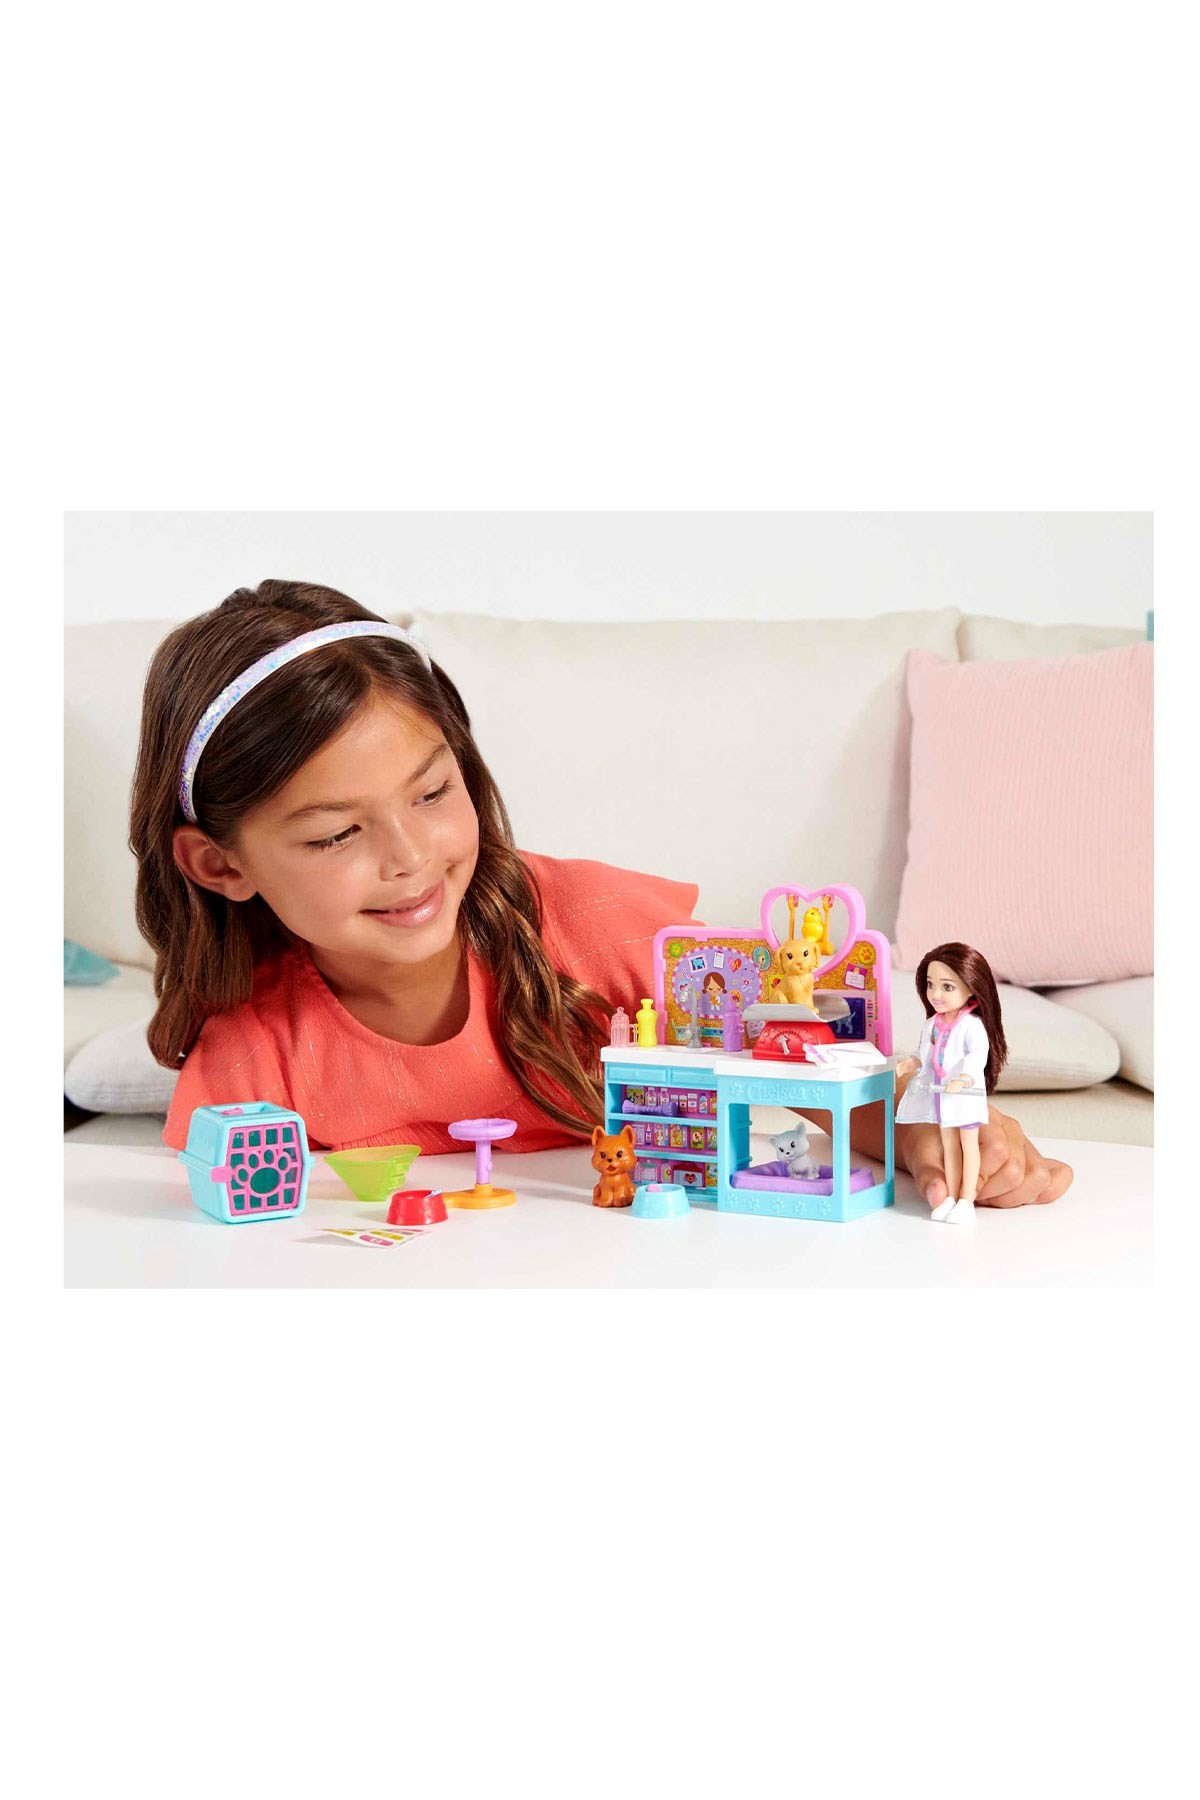 Barbie Chelsea Meslekleri Öğreniyor Veteriner Oyun Seti